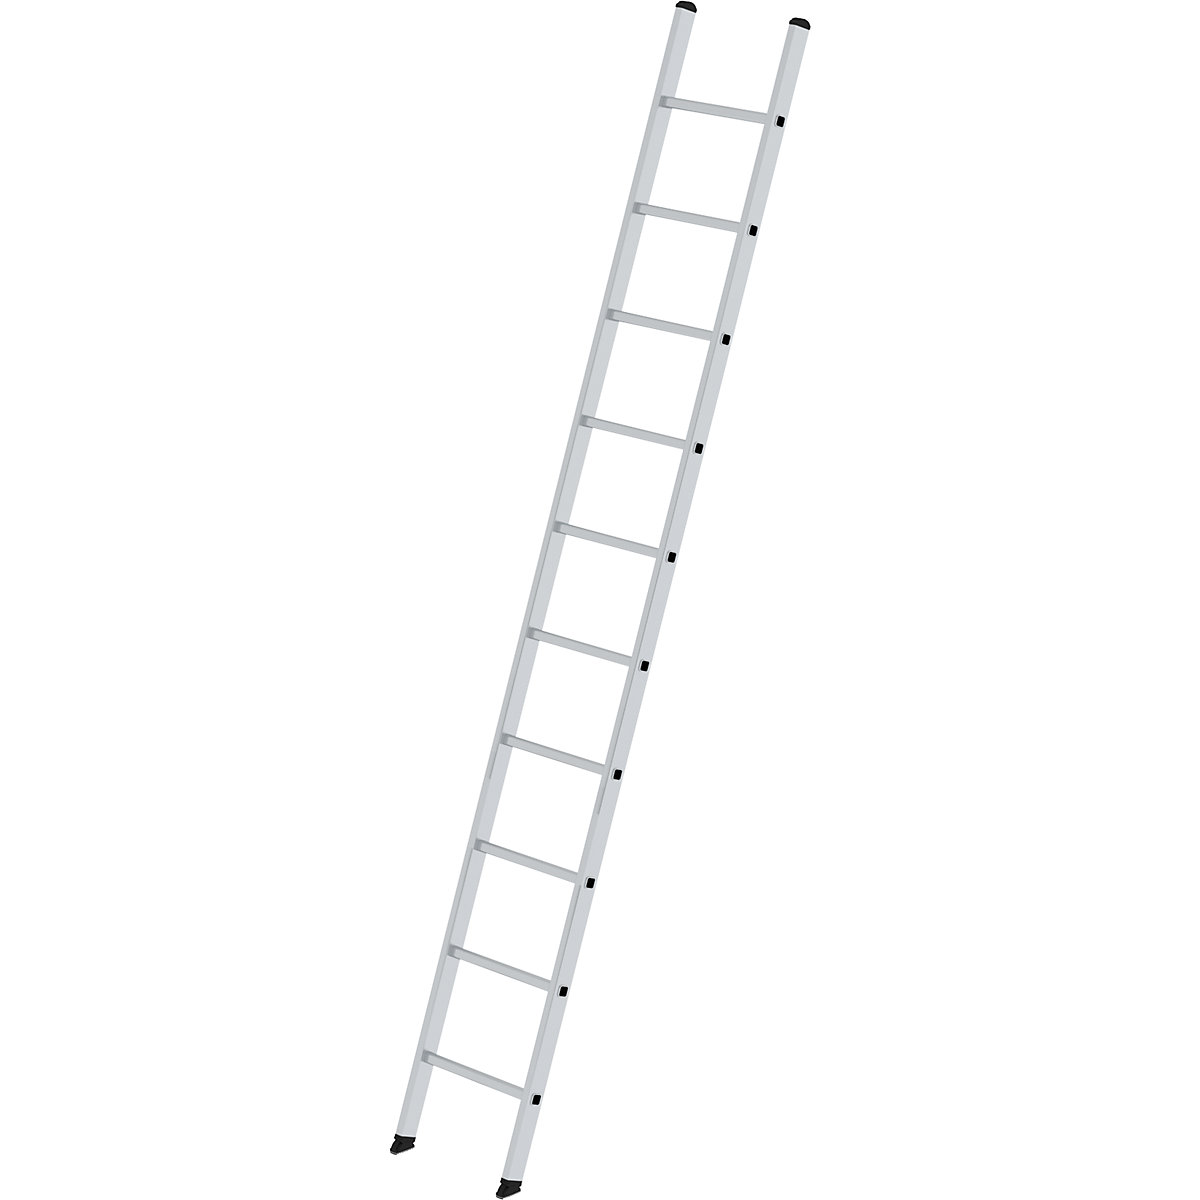 Príložný rebrík s priečkami – MUNK, profesionálne vyhotovenie, šírka 420 mm, 10 priečok, š x h stojiny 58 x 25 mm-5